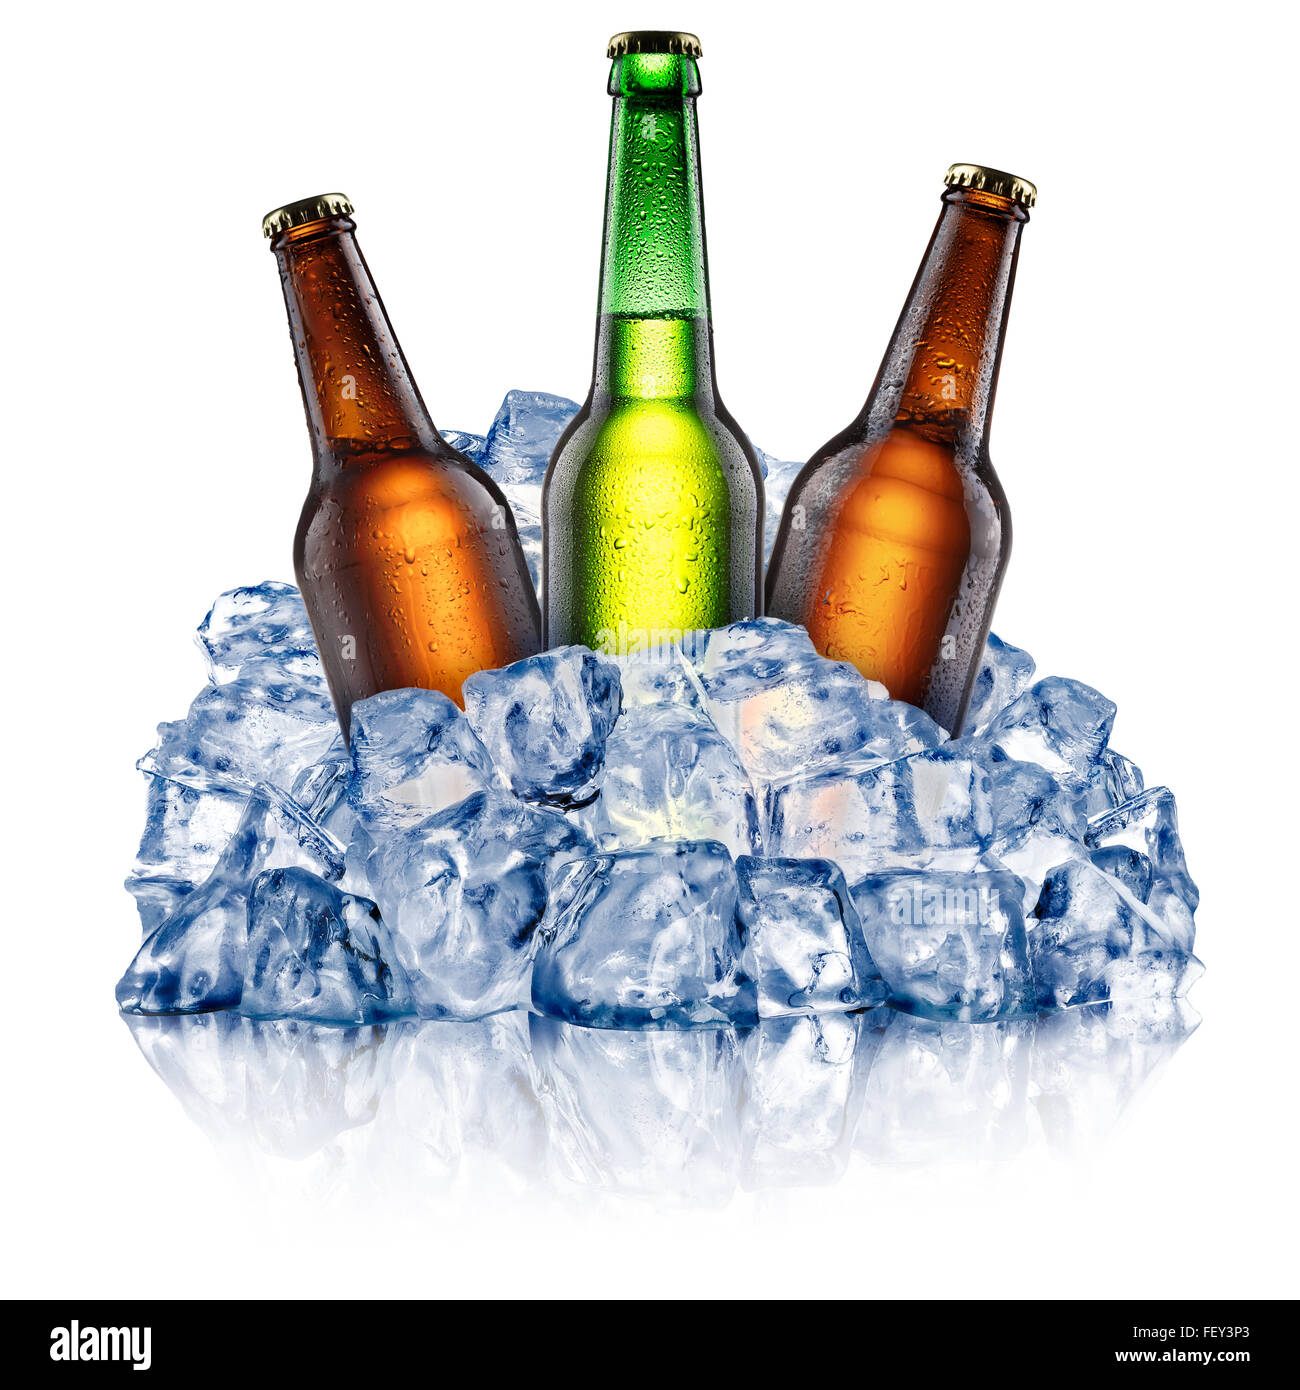 Verde e marrone e le bottiglie di birra, il raffreddamento in un ruvido ghiaccio tritato. I tracciati di ritaglio Foto Stock